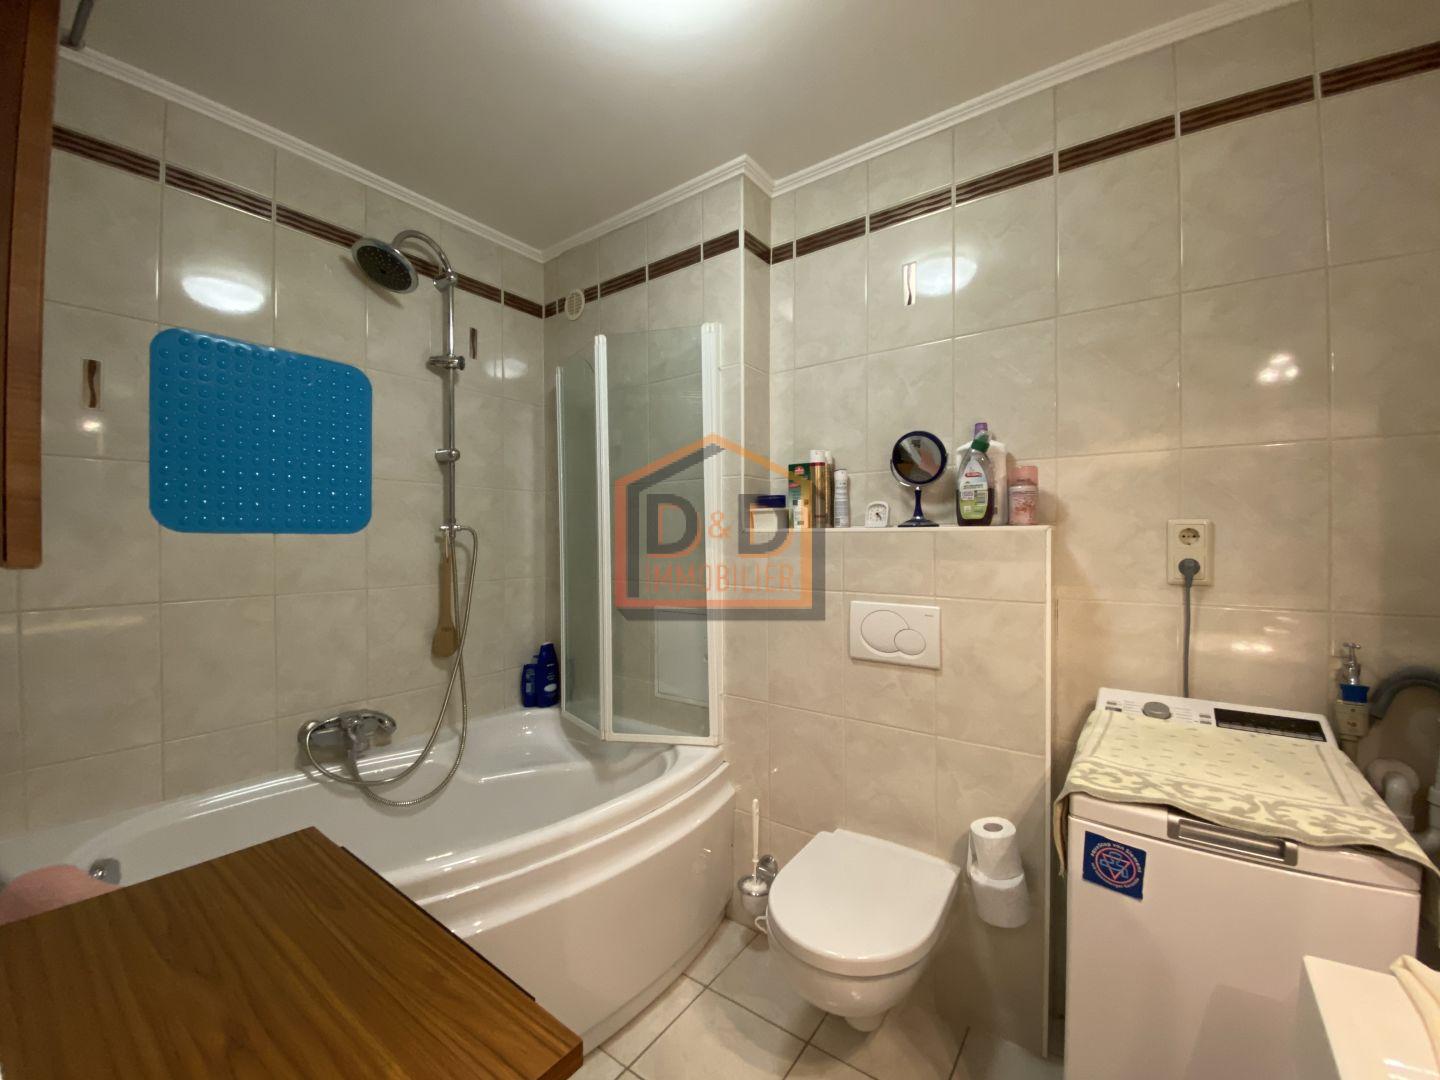 Appartement à Luxembourg-Bonnevoie, 70 m², 2 chambres, 1 salle de bain, 1 700 €/mois